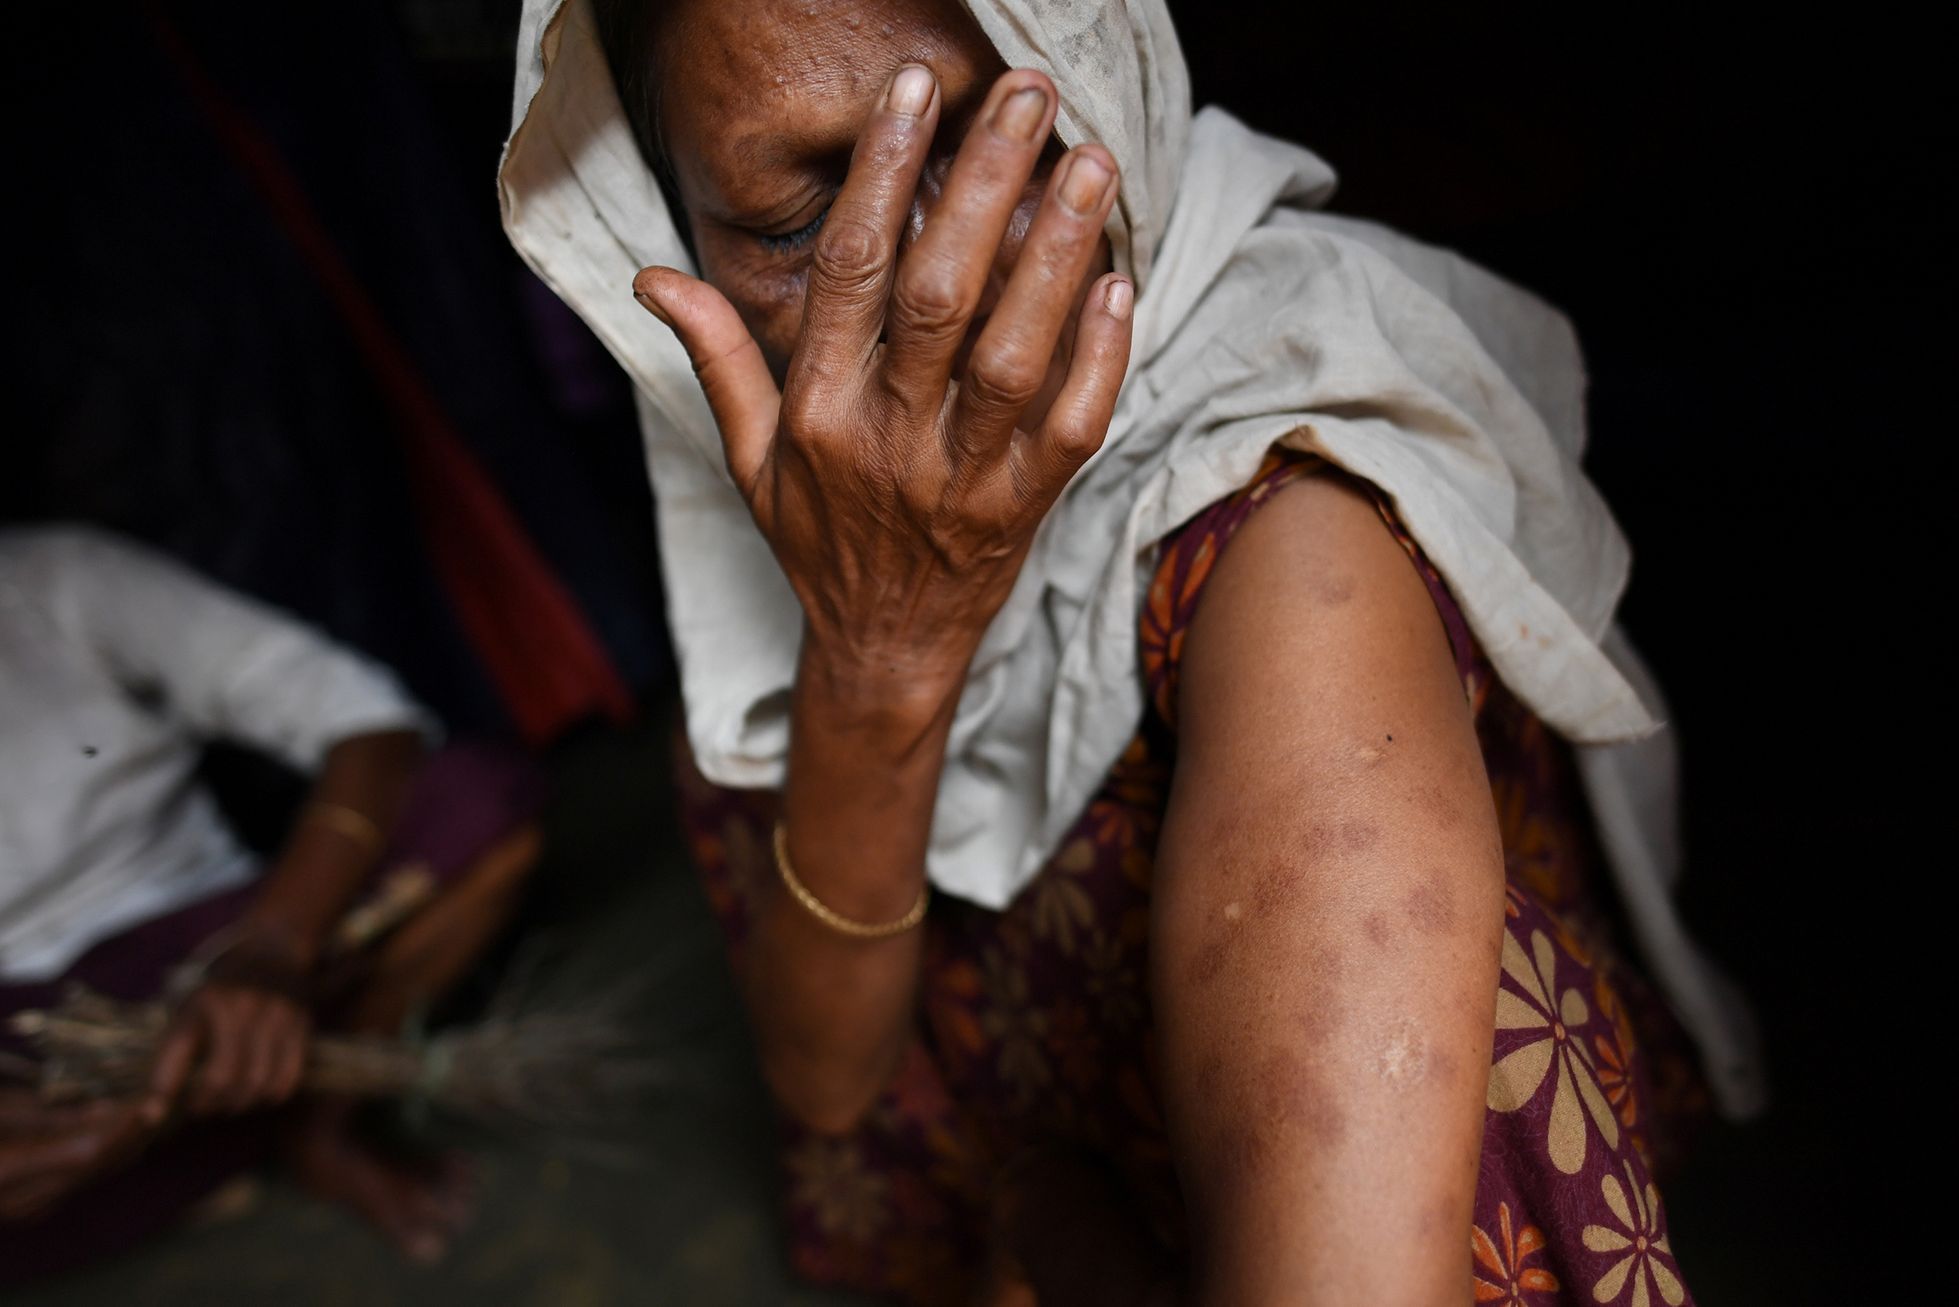 Fotogalerie / Rohingové v Bangladéši / Reuters / 24